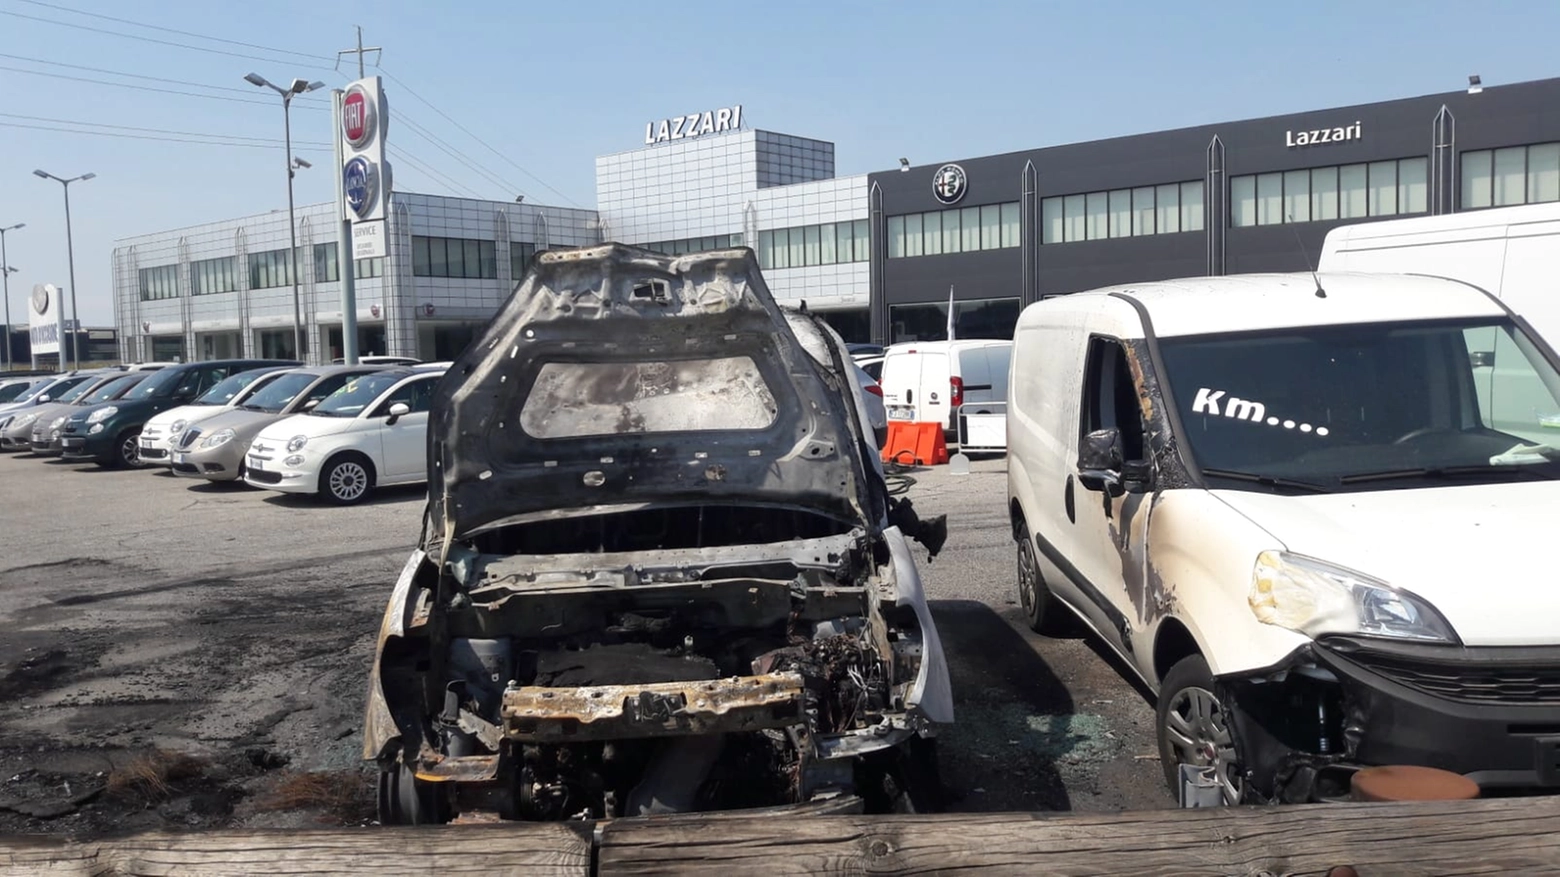 Alcune auto bruciate presso la concessionaria Lazzari